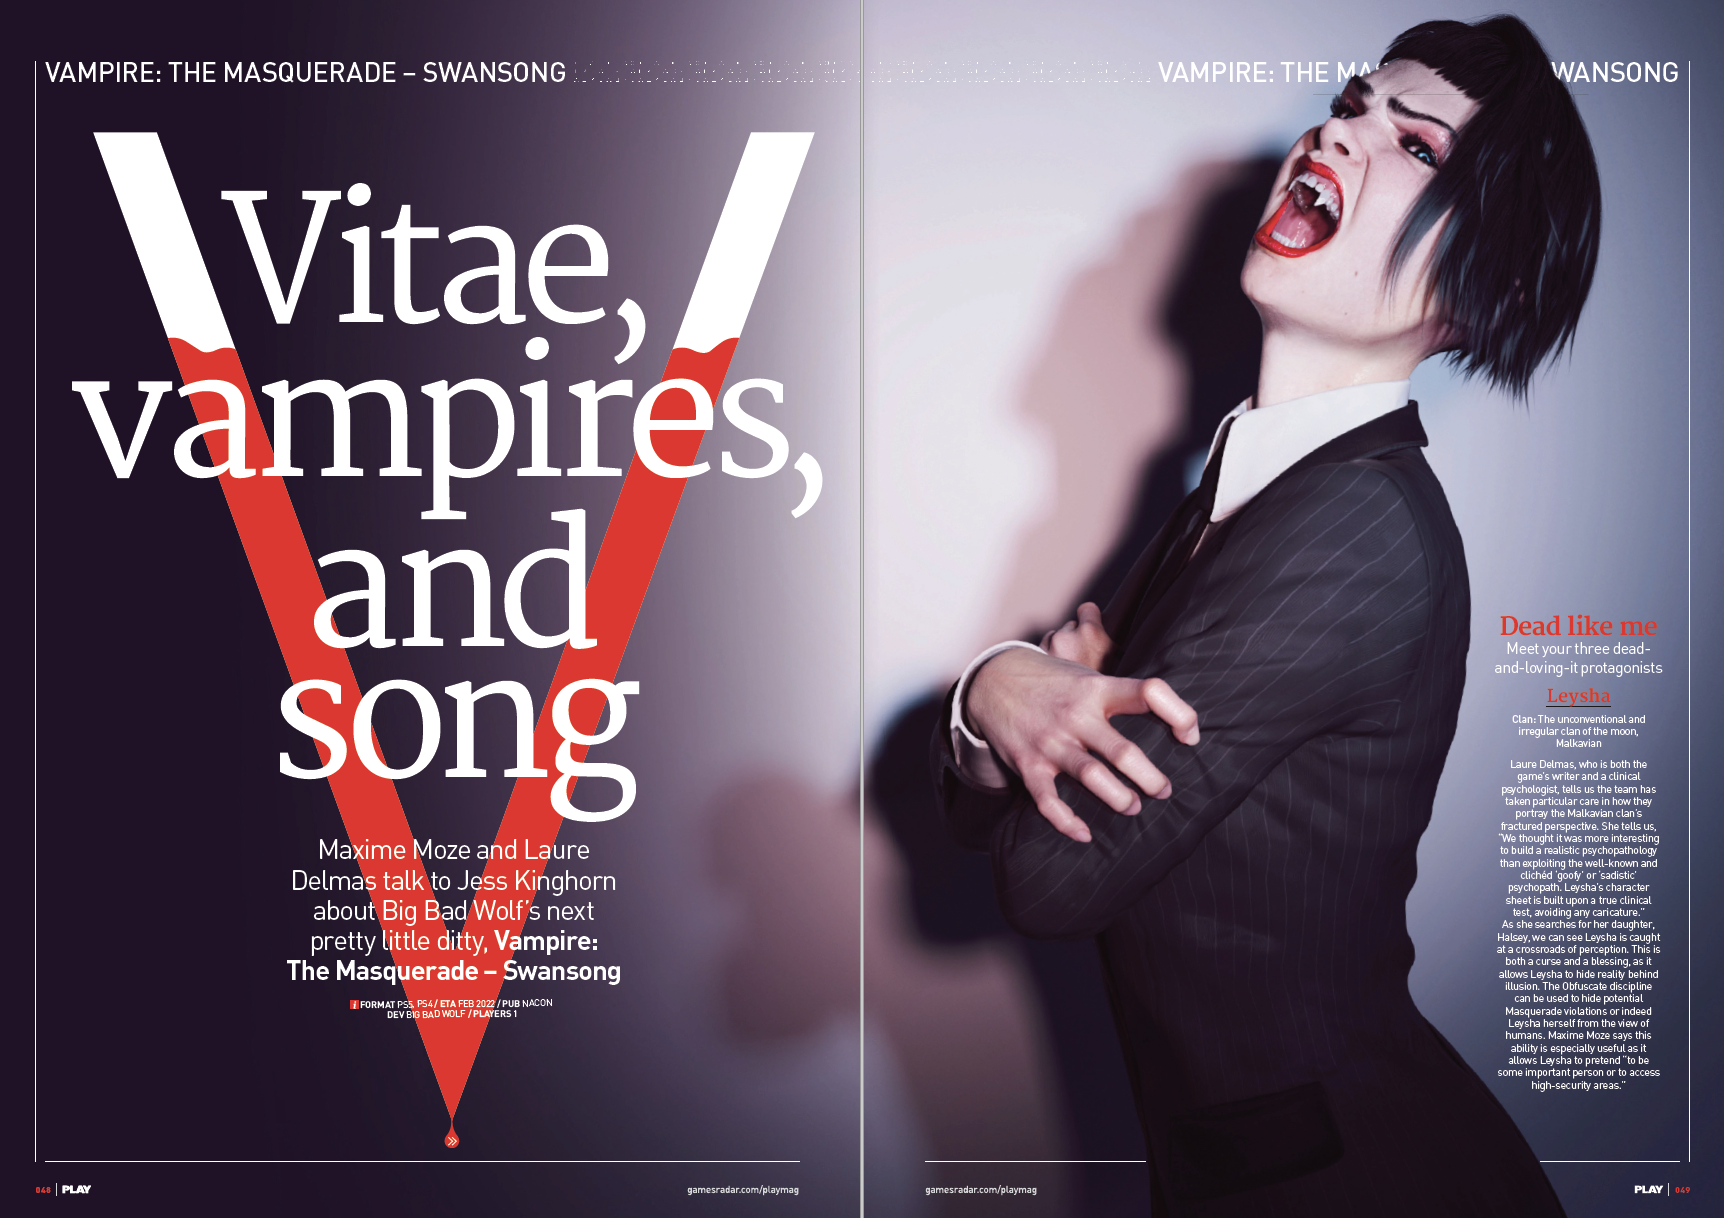 Vampires: Masquerade - Swan Song